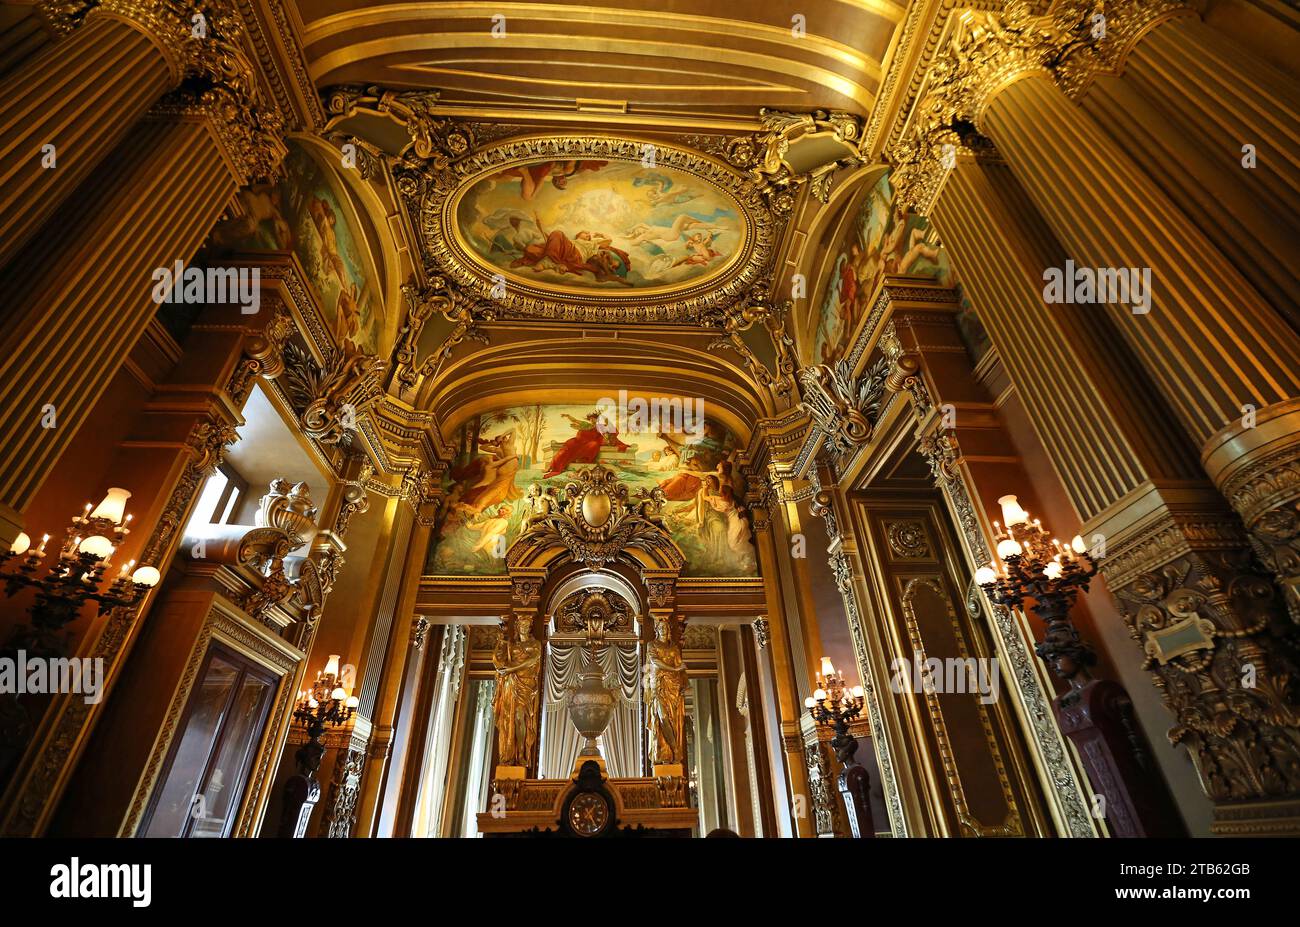 Octagonal Salon - Palace Garnier, Paris Stock Photo